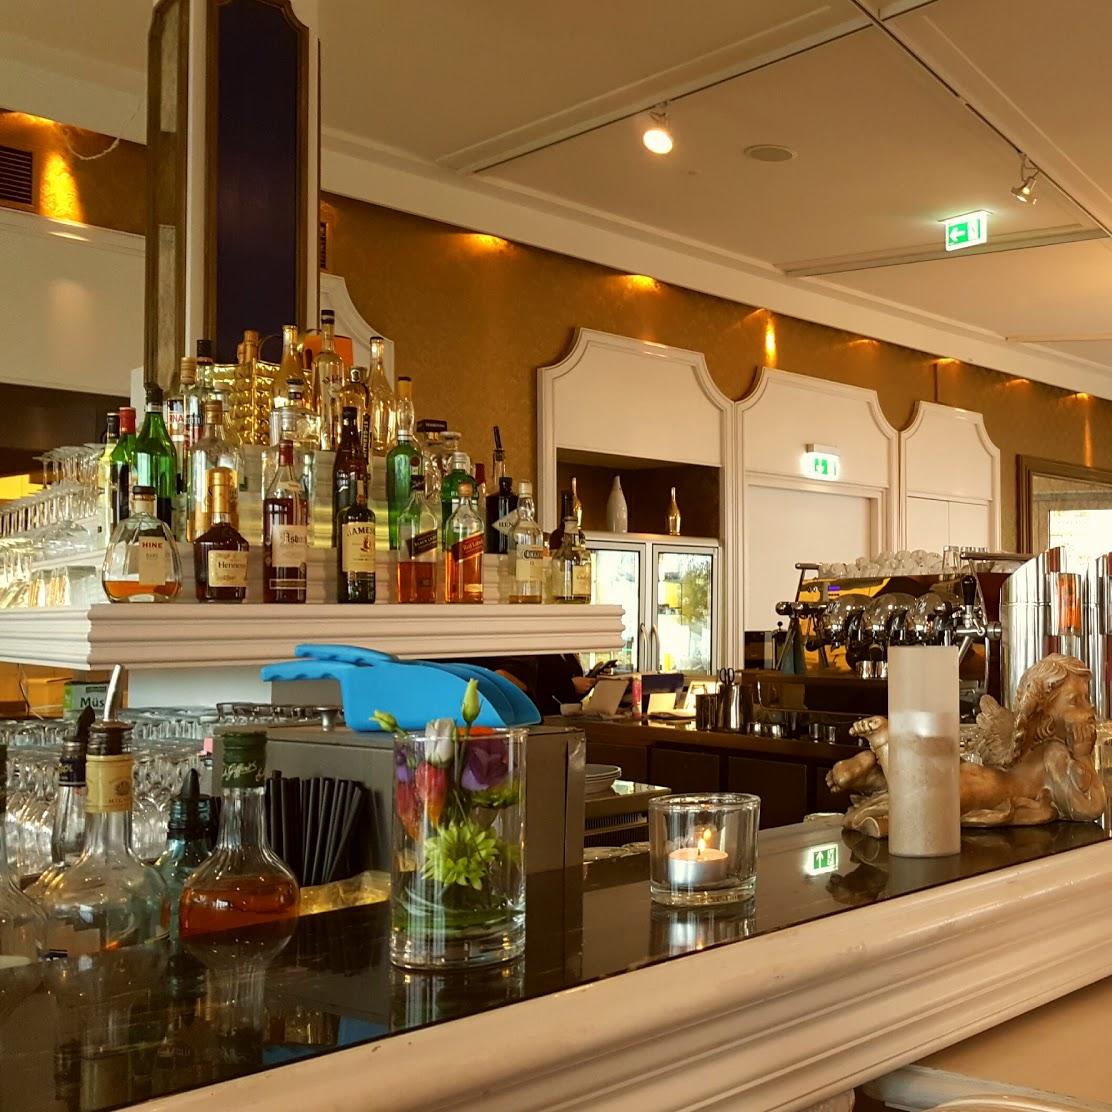 Restaurant "Humboldt Terrassen - Eventlocation mit Panorama-Café & Bar" in Berlin